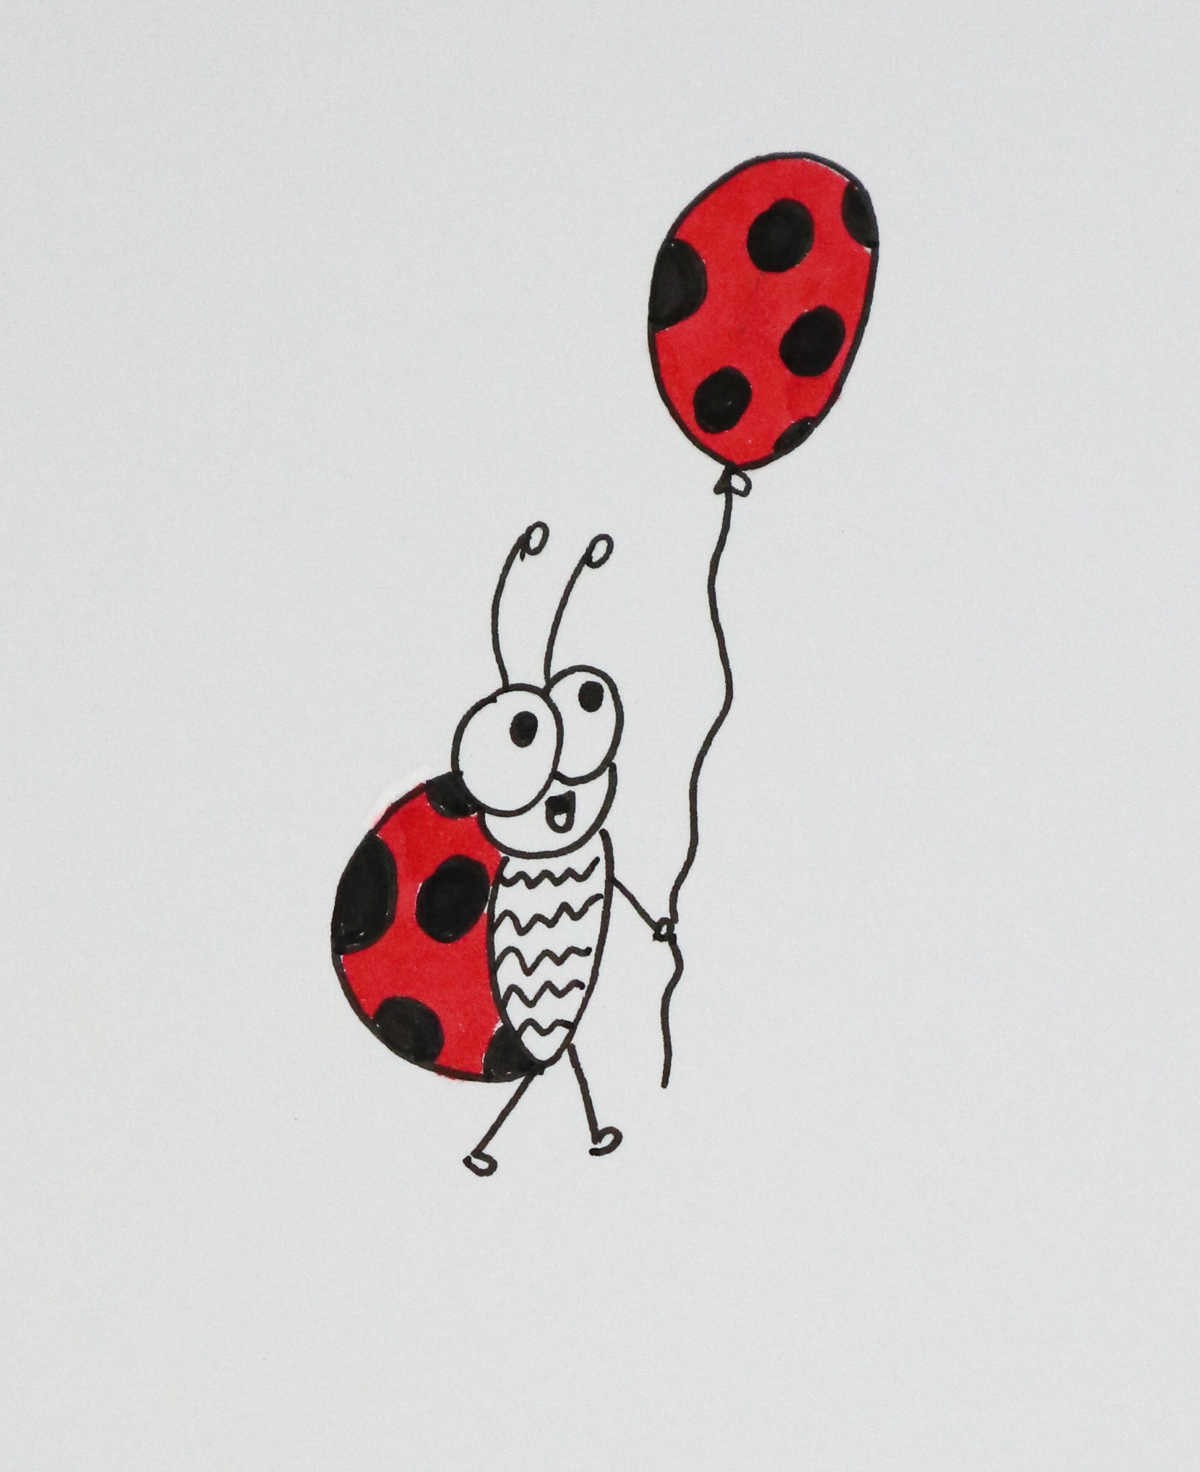 Ladybug with Balloon